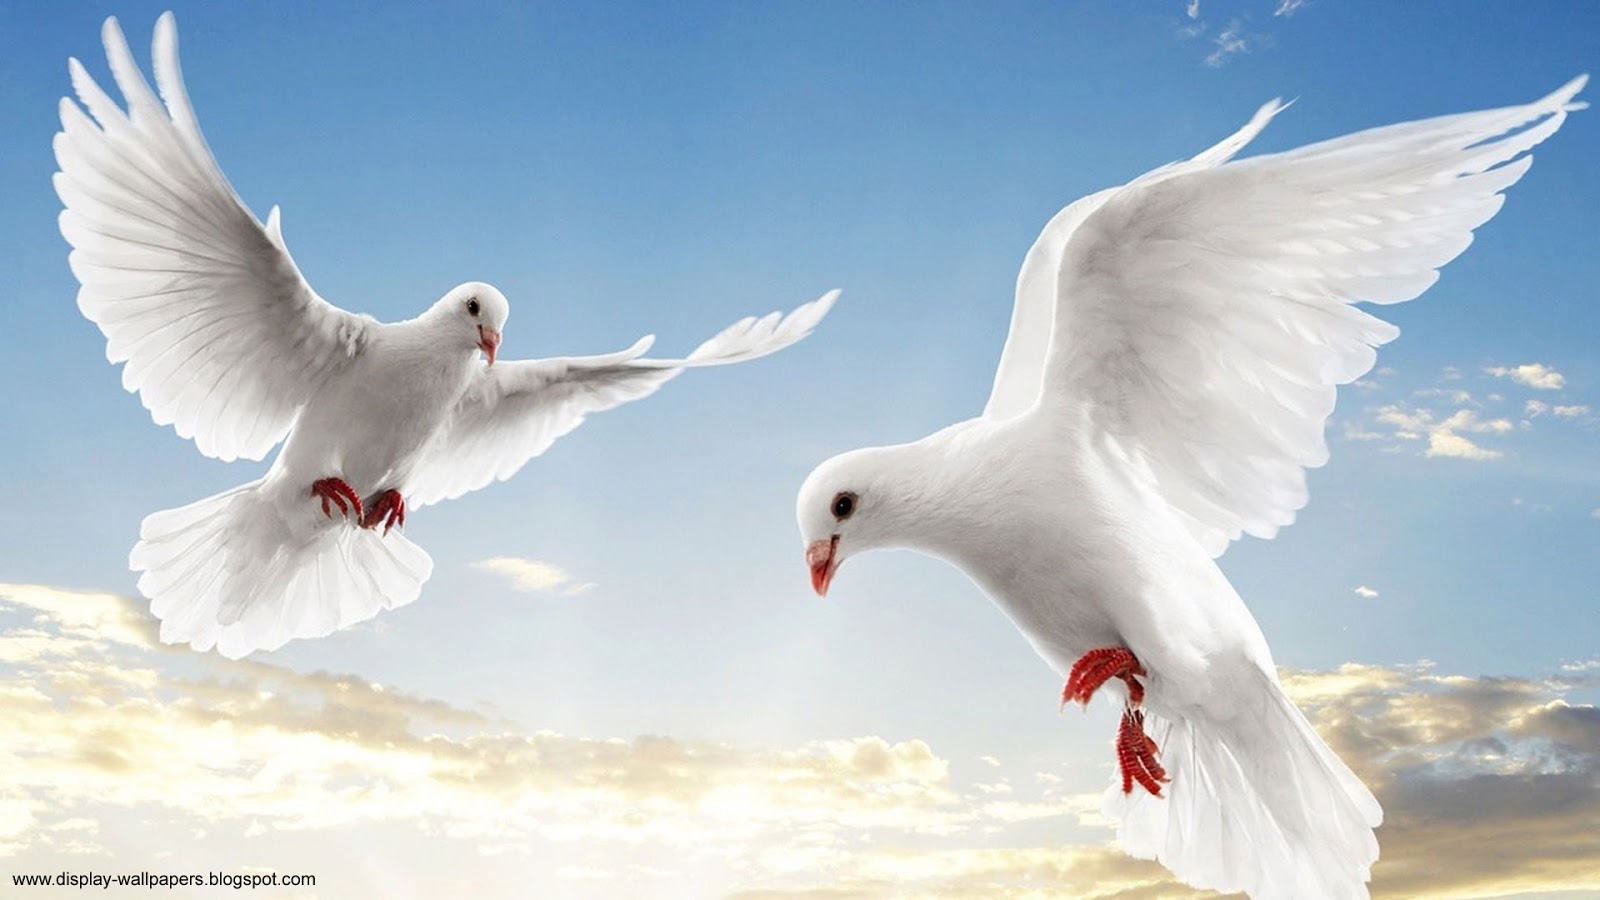 animals wallpaper hd free download,bird,sky,beak,pigeons and doves,rock dove